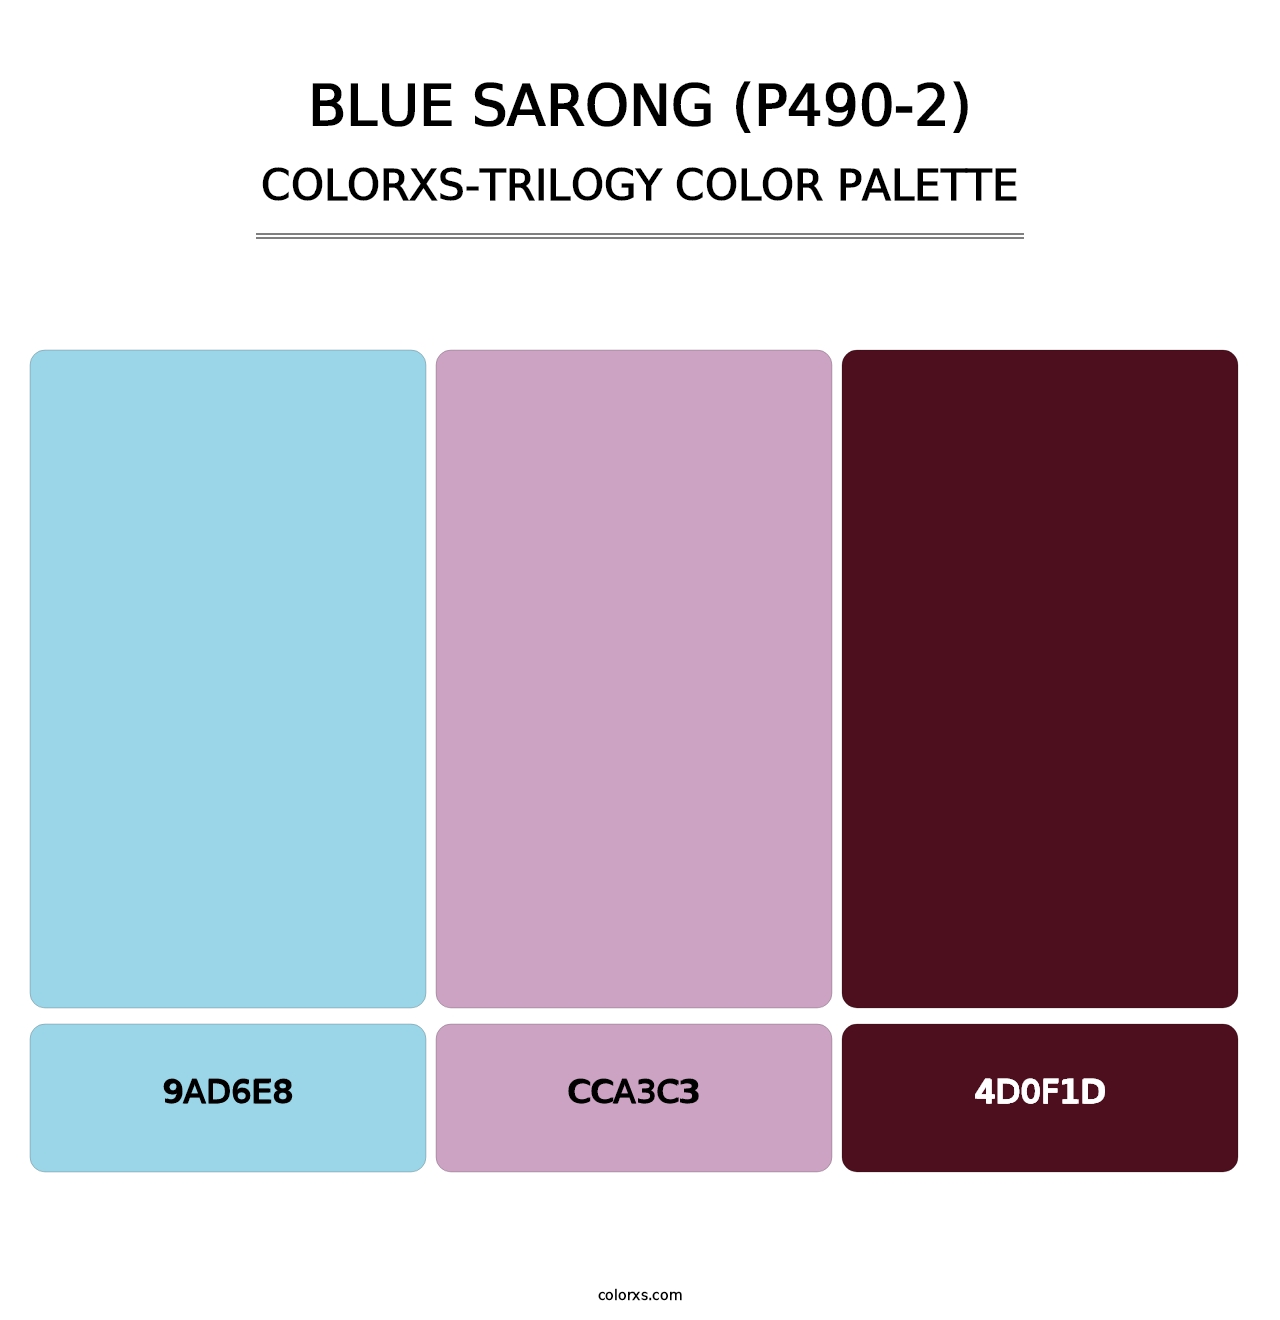 Blue Sarong (P490-2) - Colorxs Trilogy Palette